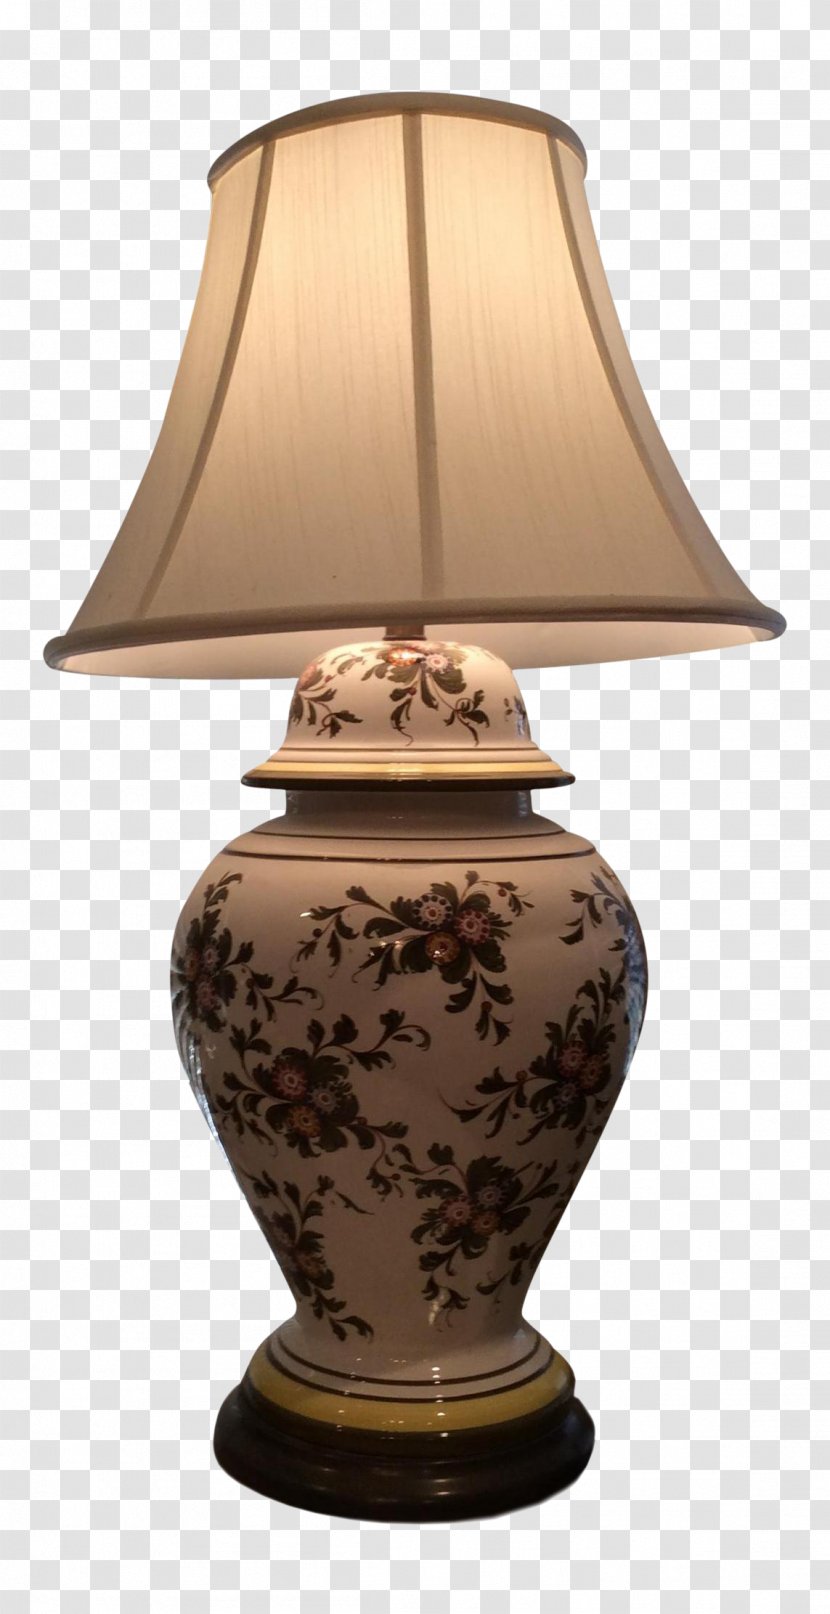 Ceramic Vase Product Design Urn - Ginger Jar Lamps For Bedroom Nightstands Transparent PNG